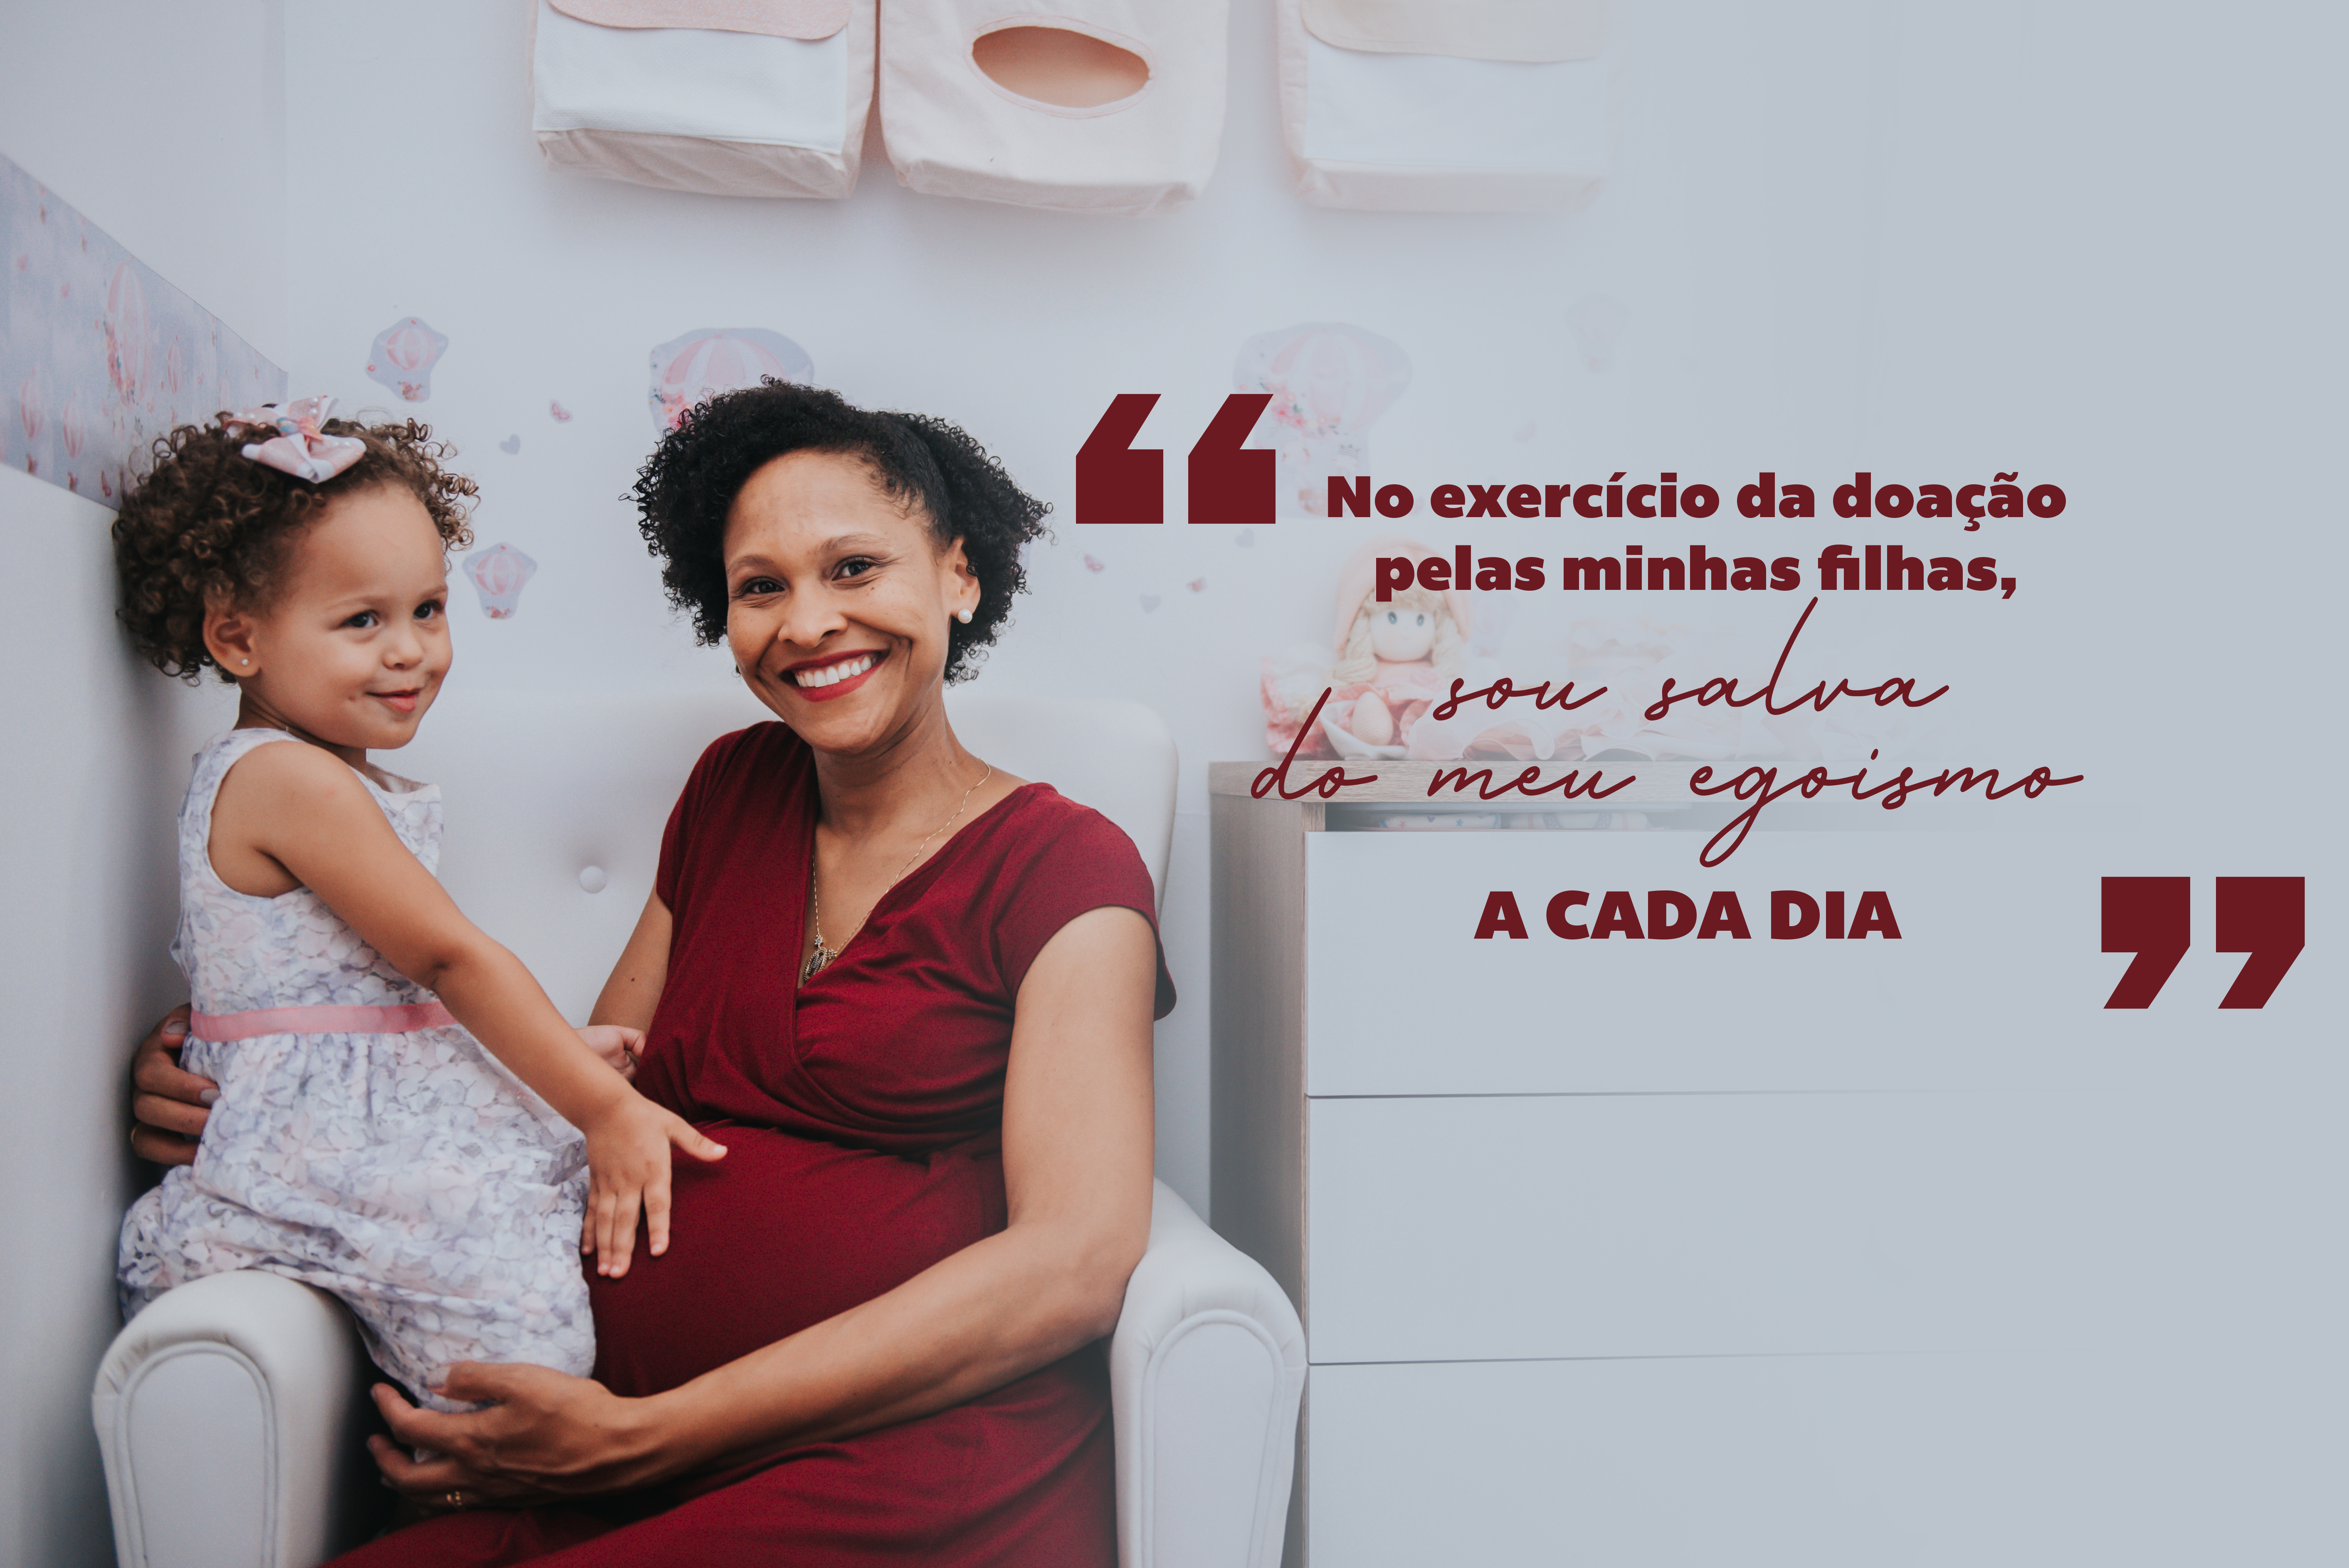 Maria Angélica - Missionária da Comunidade Canção Nova  | Foto Ilustrativa: Larissa Ferreira e Bruno Marques/cancaonova.com